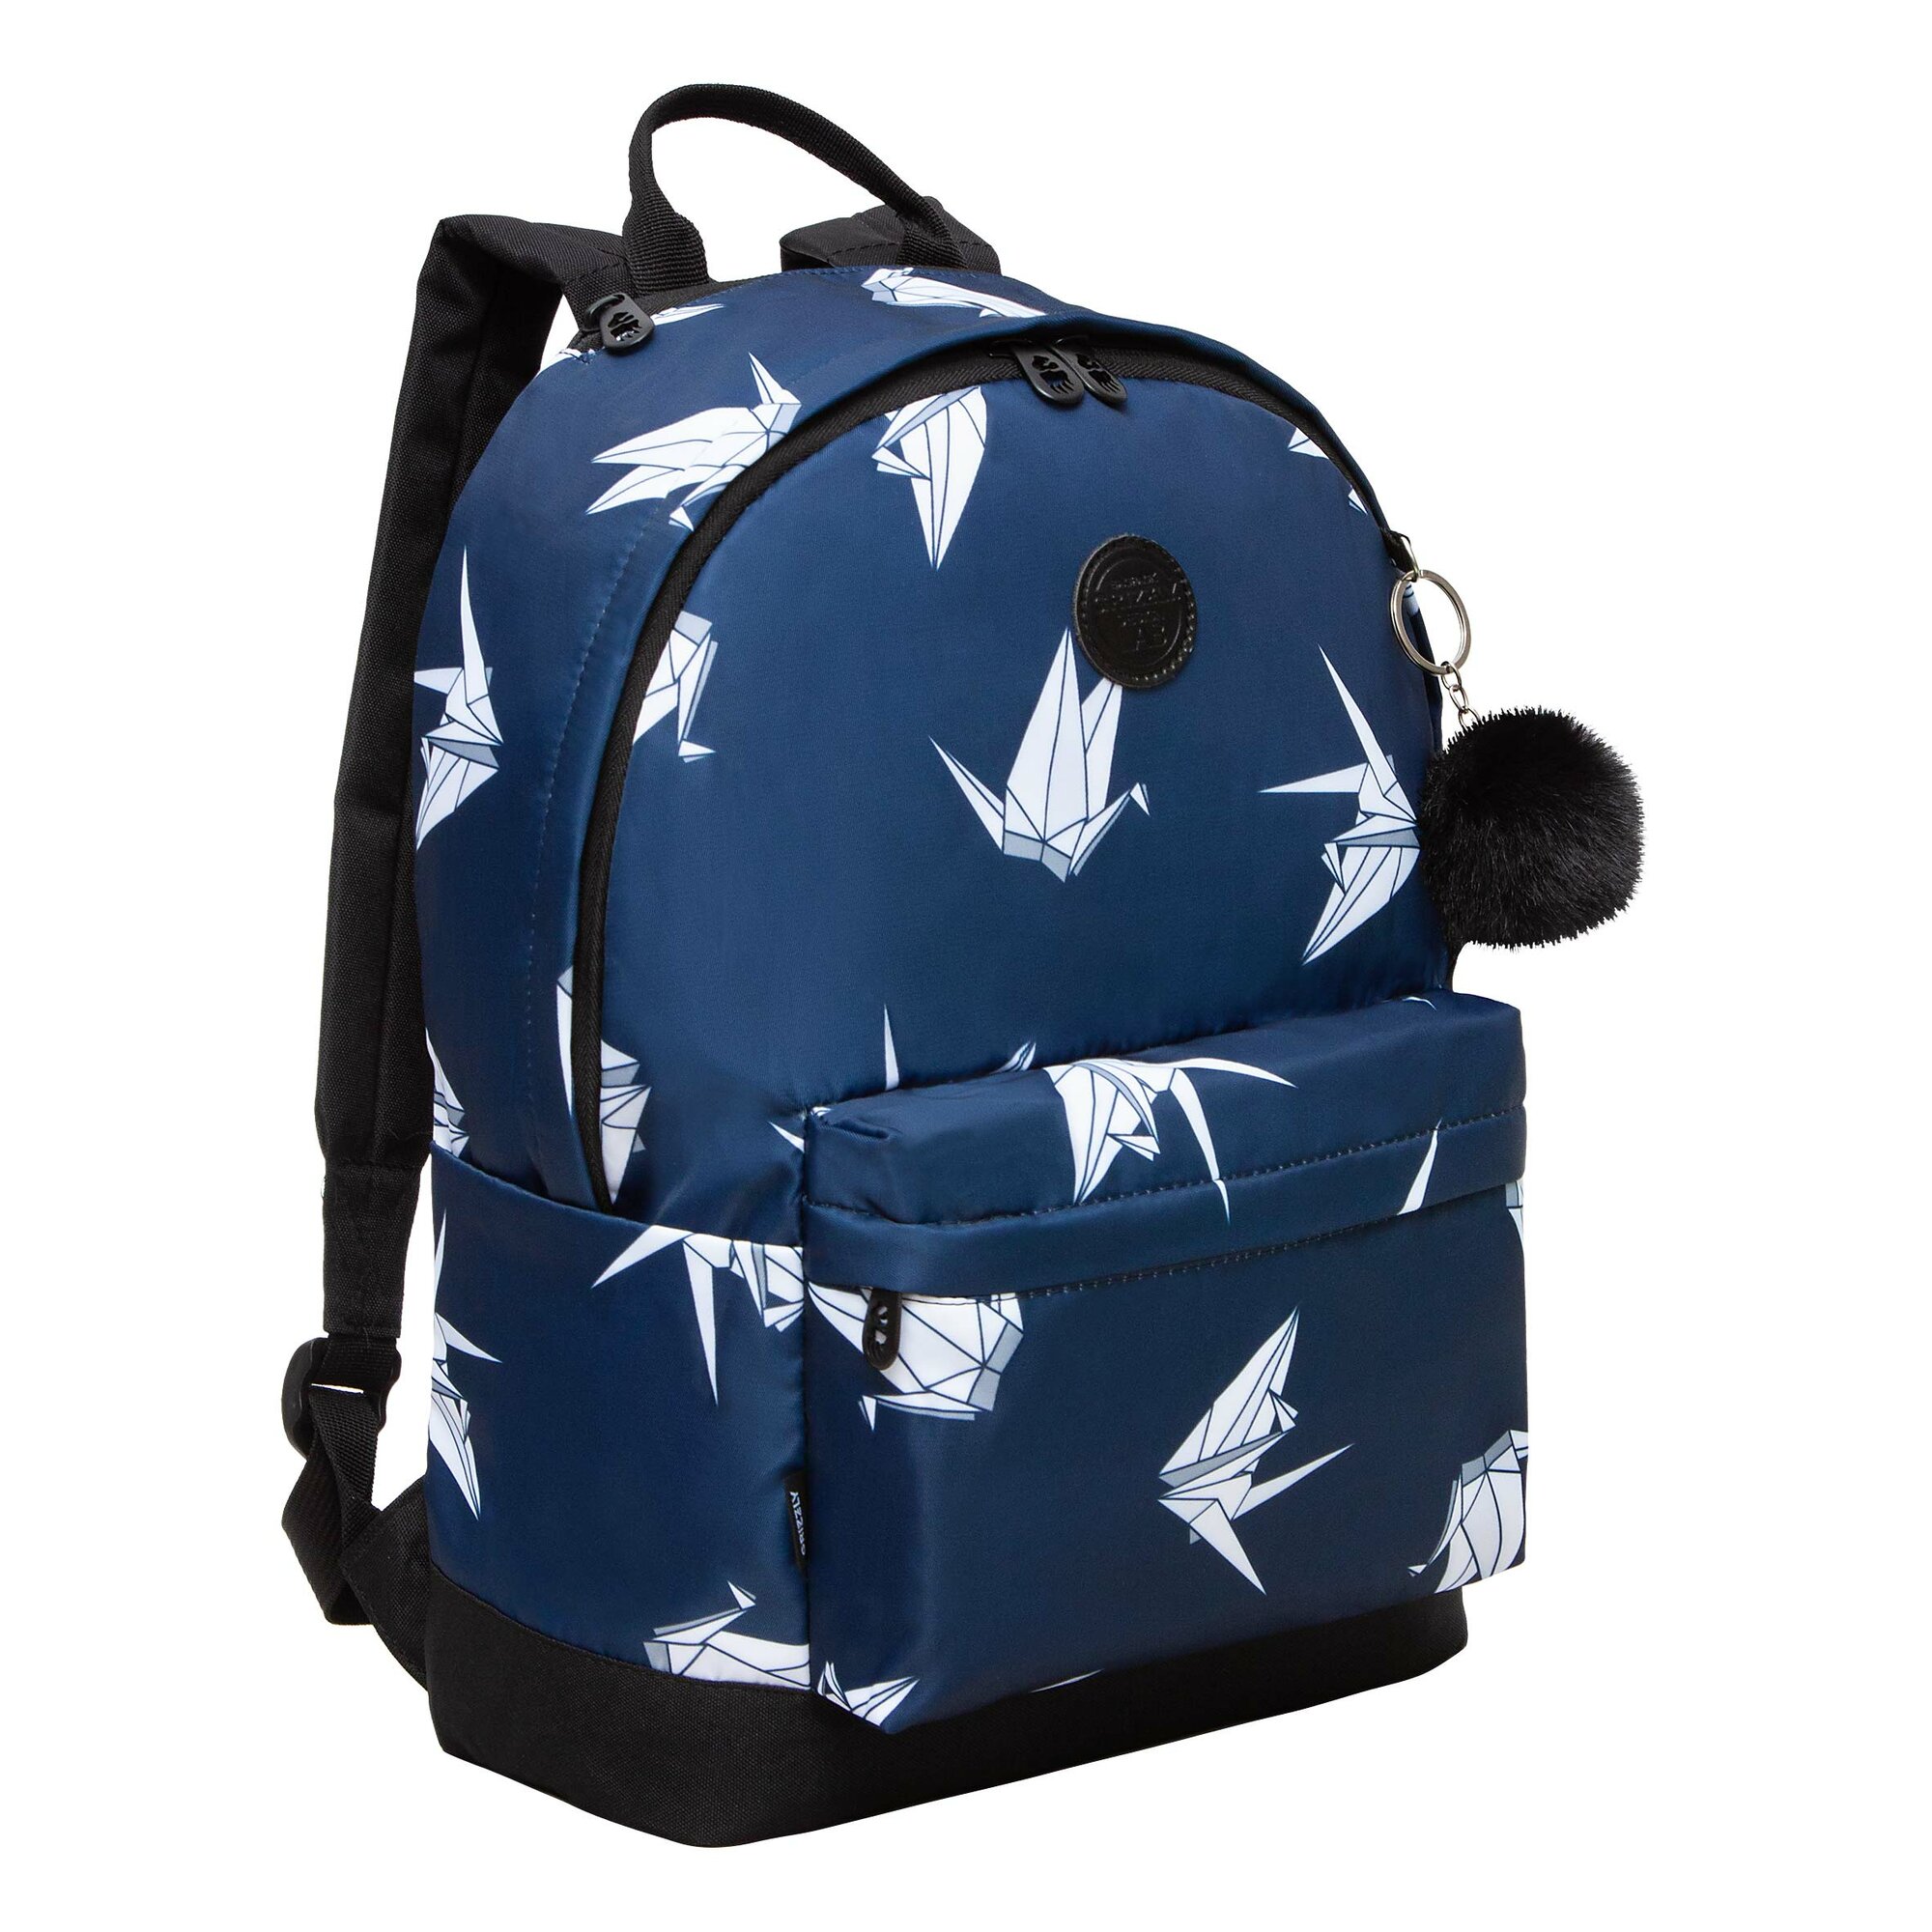 Легкий рюкзак городской GRIZZLY с карманом для ноутбука 13", одним отделением, размер L, женский RXL-322-10/1